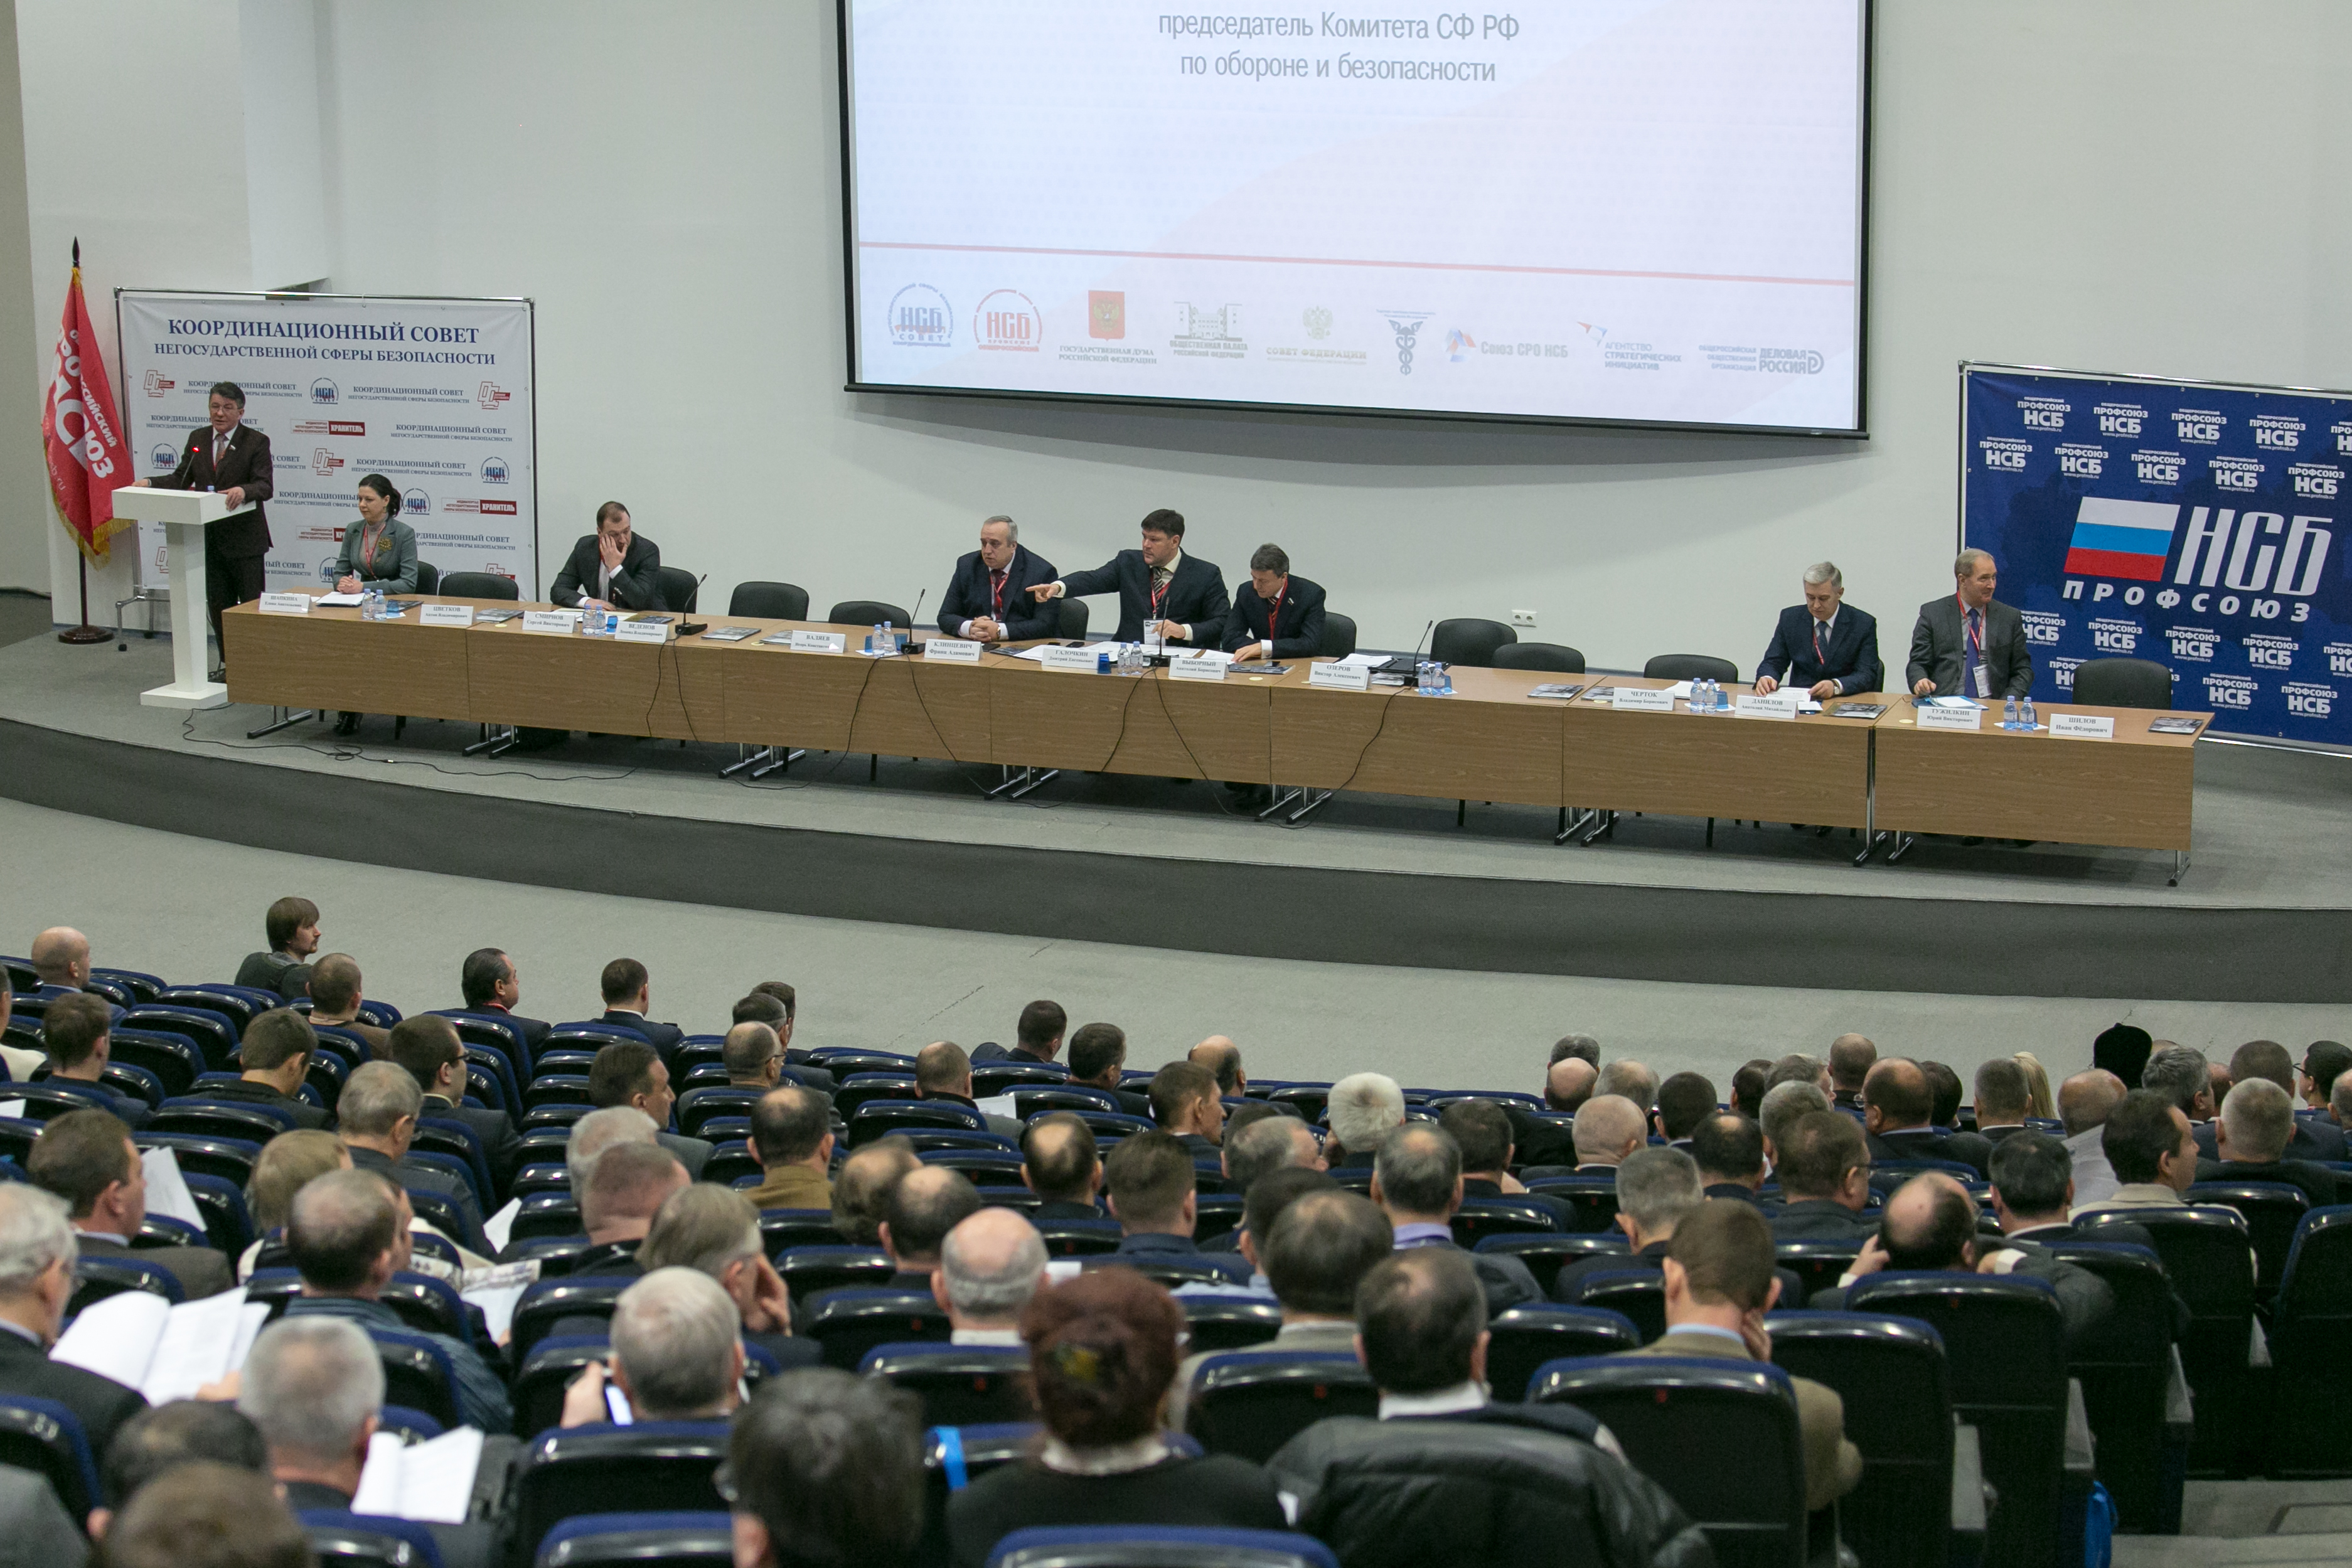 В Москве, в ЦВК «Крокус-экспо» после официального открытия 20 Форума «Технологии безопасности-2015», состоялось III Всероссийское отраслевое совещание негосударственной сферы безопасности.